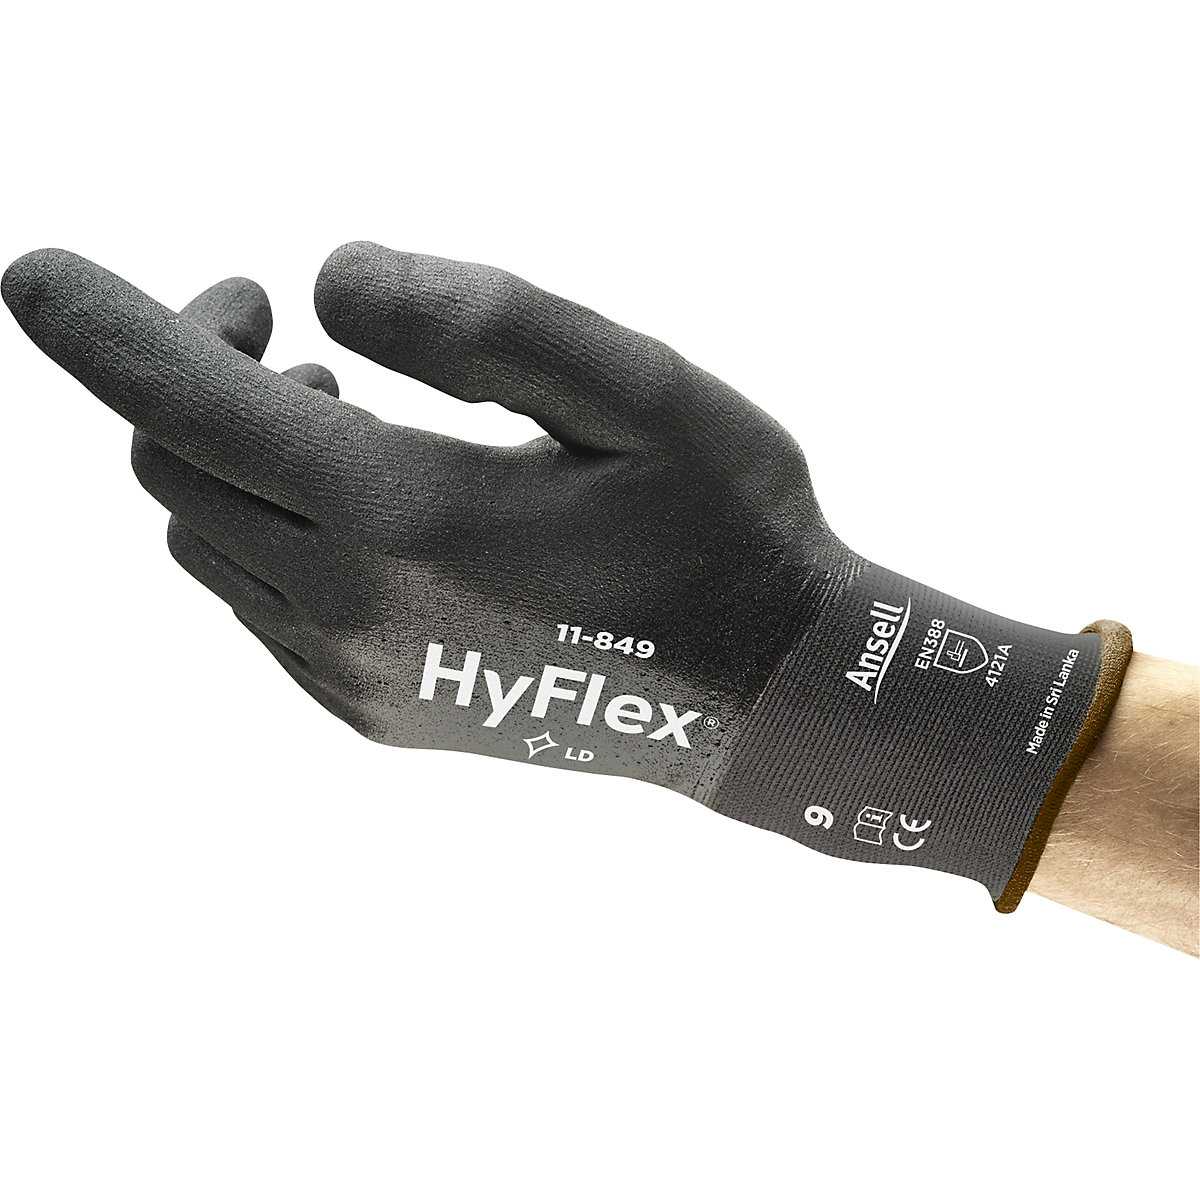 Rękawica robocza HyFlex® 11-849 – Ansell (Zdjęcie produktu 2)-1